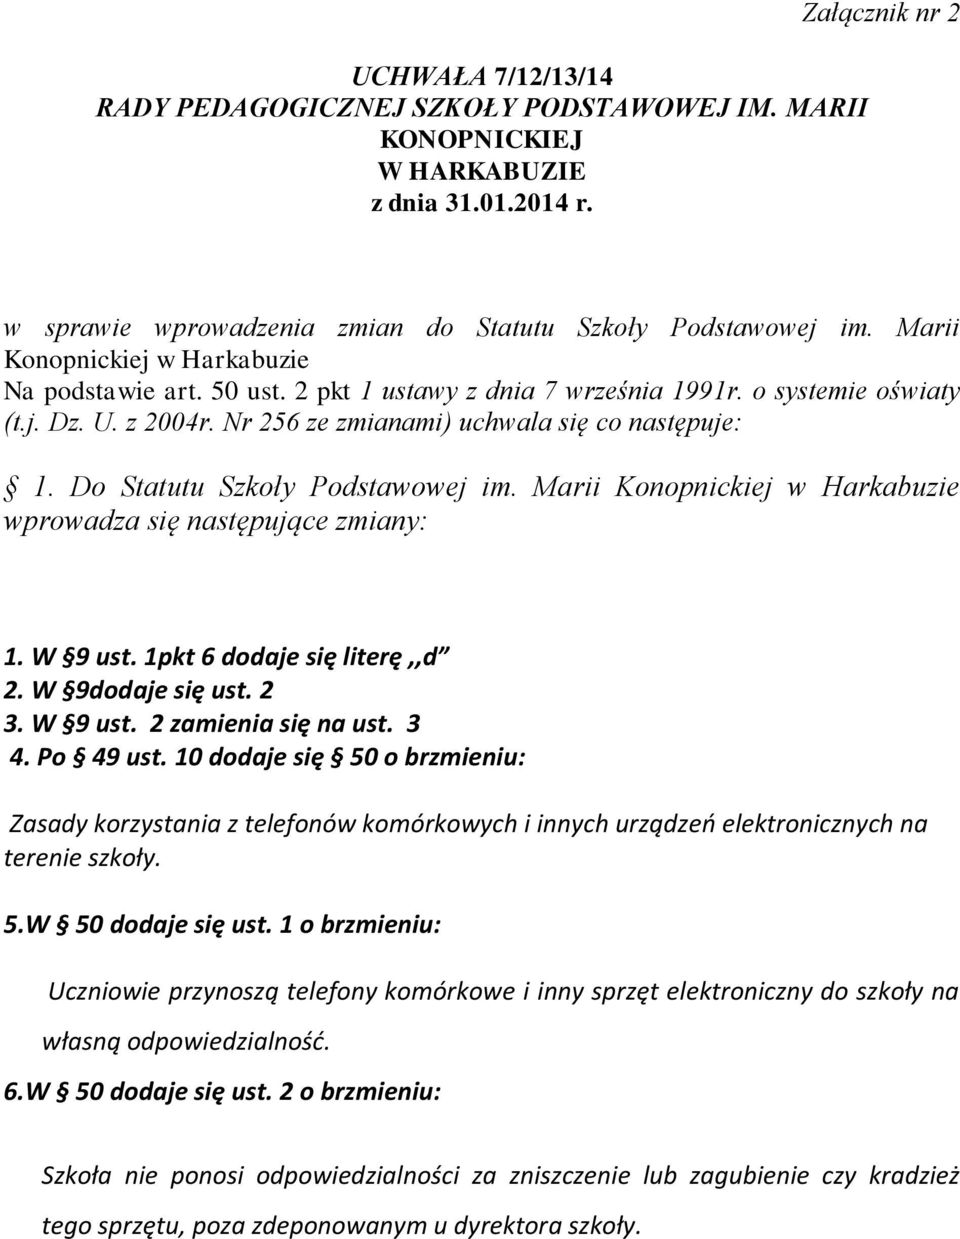 Do Statutu Szkoły Podstawowej im. Marii Konopnickiej w Harkabuzie wprowadza się następujące zmiany: 1. W 9 ust. 1pkt 6 dodaje się literę,,d 2. W 9dodaje się ust. 2 3. W 9 ust. 2 zamienia się na ust.